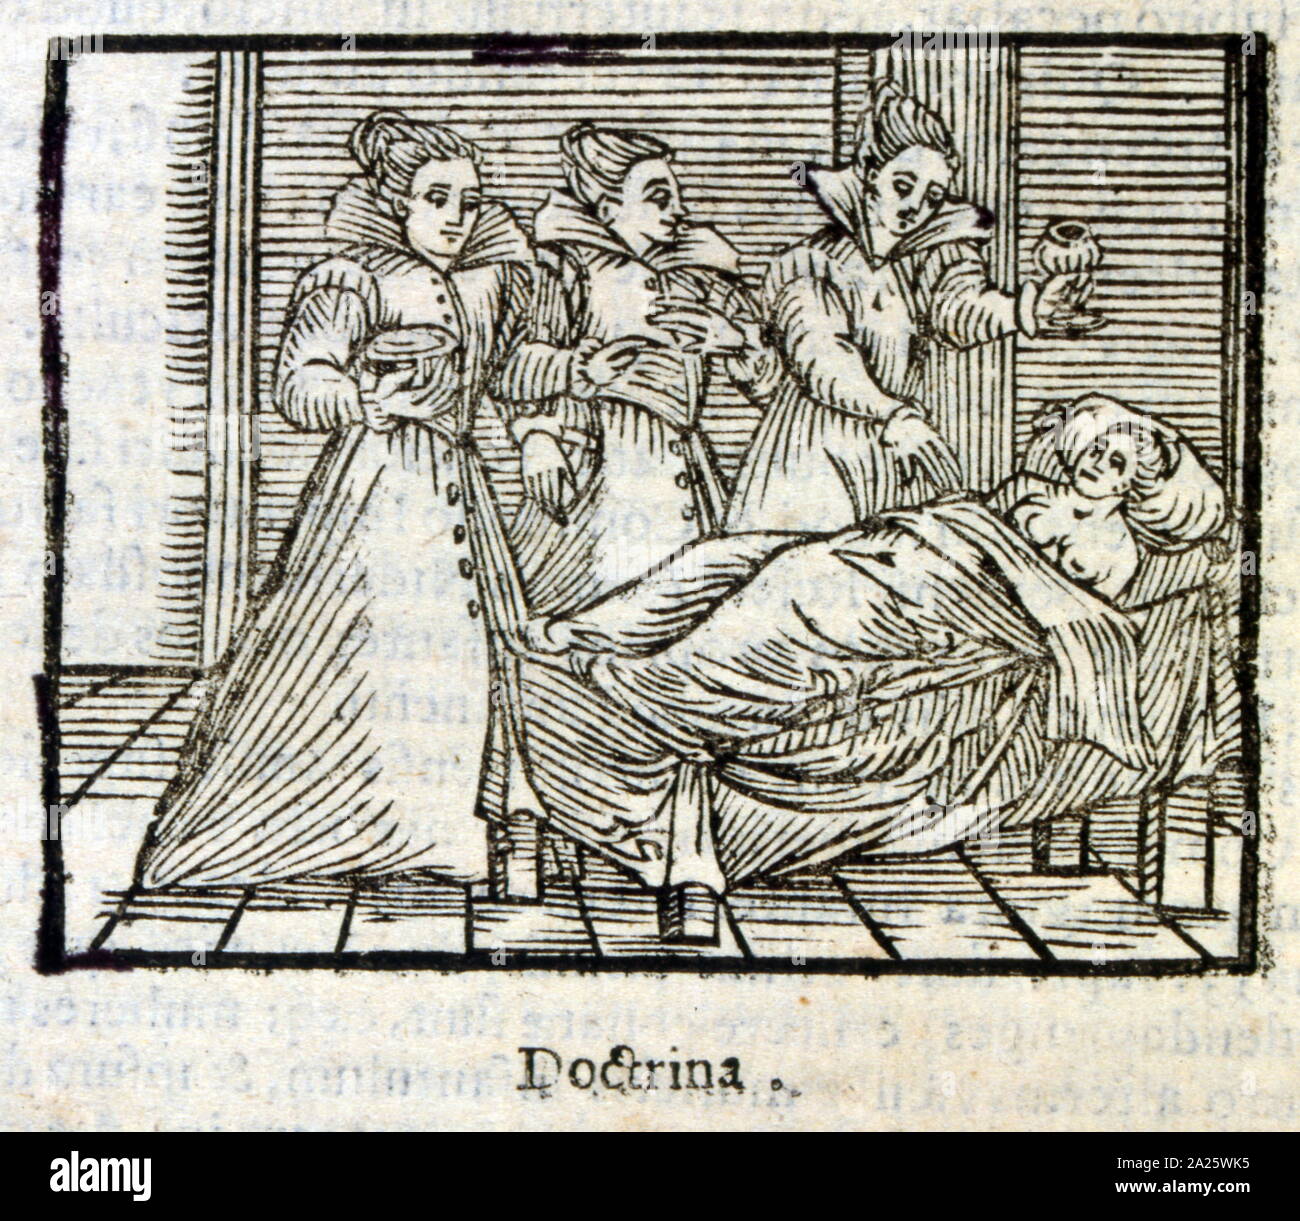 Gravure sur bois à partir d'une illustration de l'édition 1626 du Compendium Maleficarum, 'par Francesco Maria Guazzo. Compendium Maleficarum était un chasseur de sorcières d'entretien écrit en latin, et publié à Milan, Italie en 1608. Banque D'Images